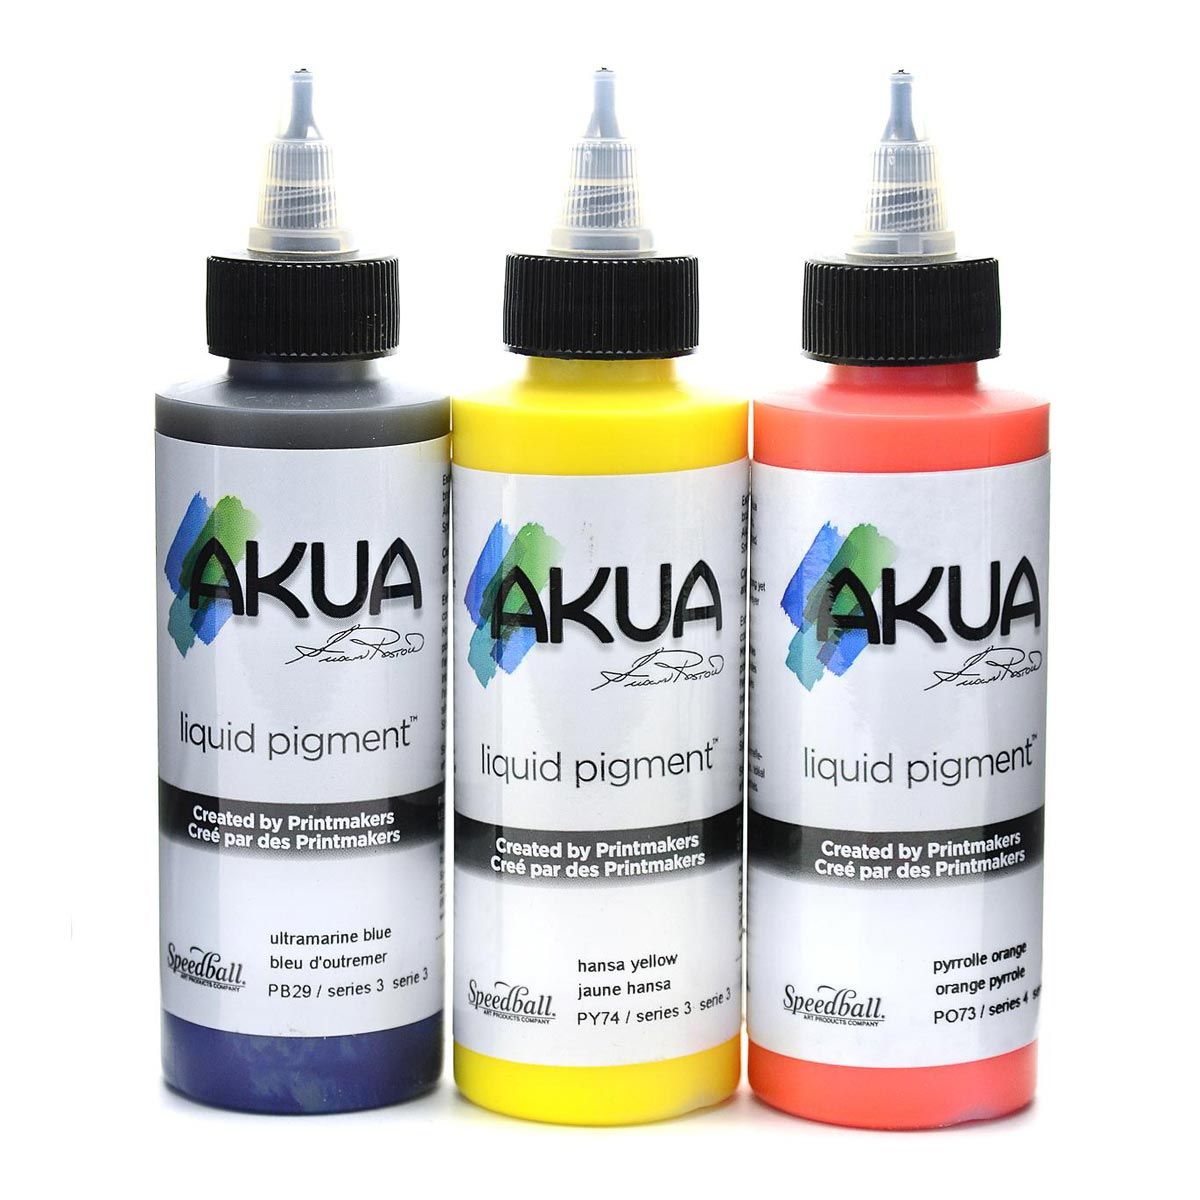 Akua Liquid Pigment Assortment